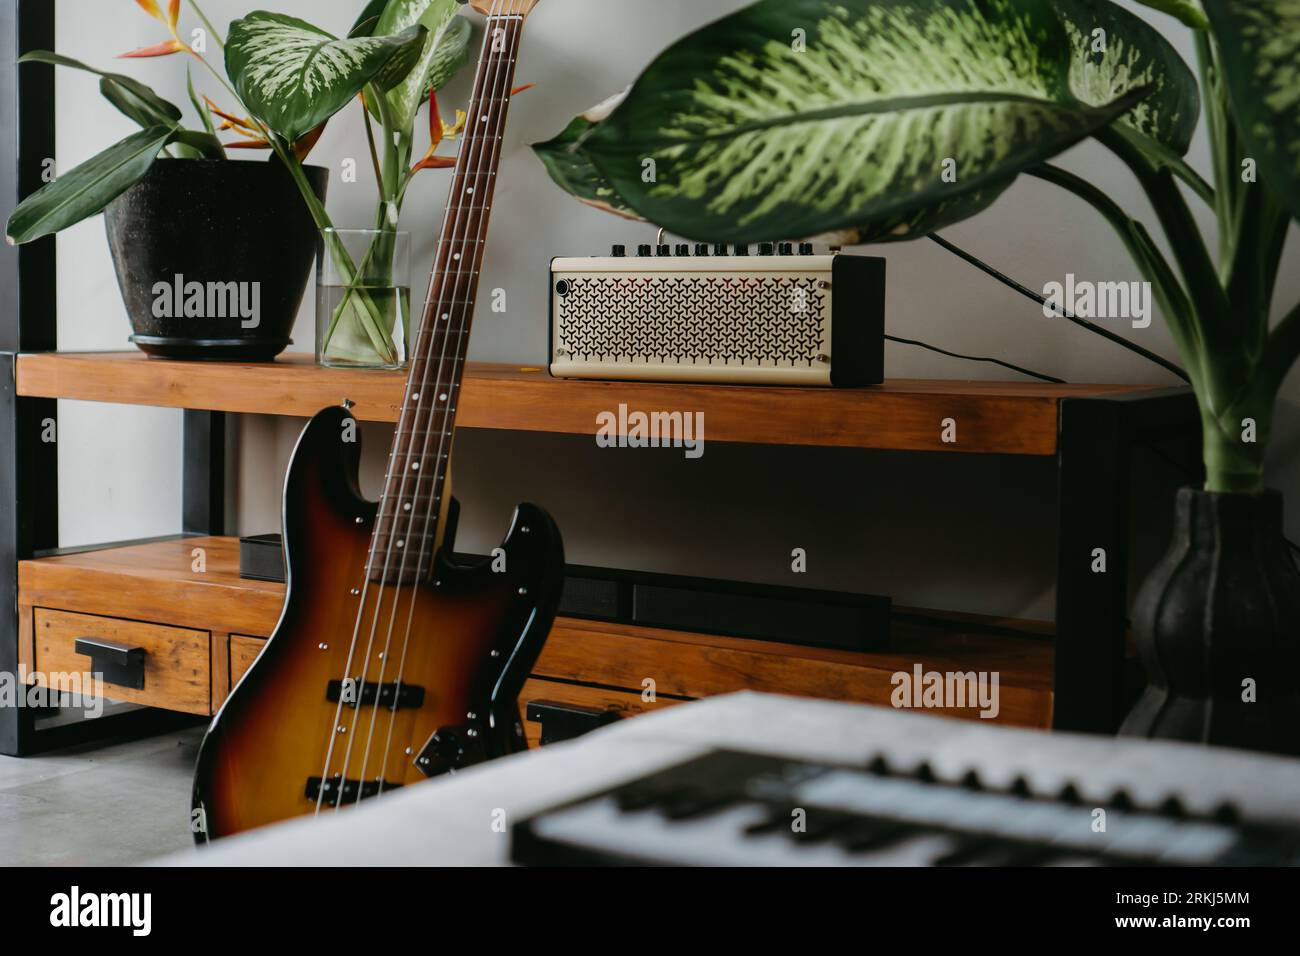 Un mixeur de musique professionnel sur une table en bois dans une pièce confortable, avec une guitare électrique en arrière-plan offrant une atmosphère créative Banque D'Images